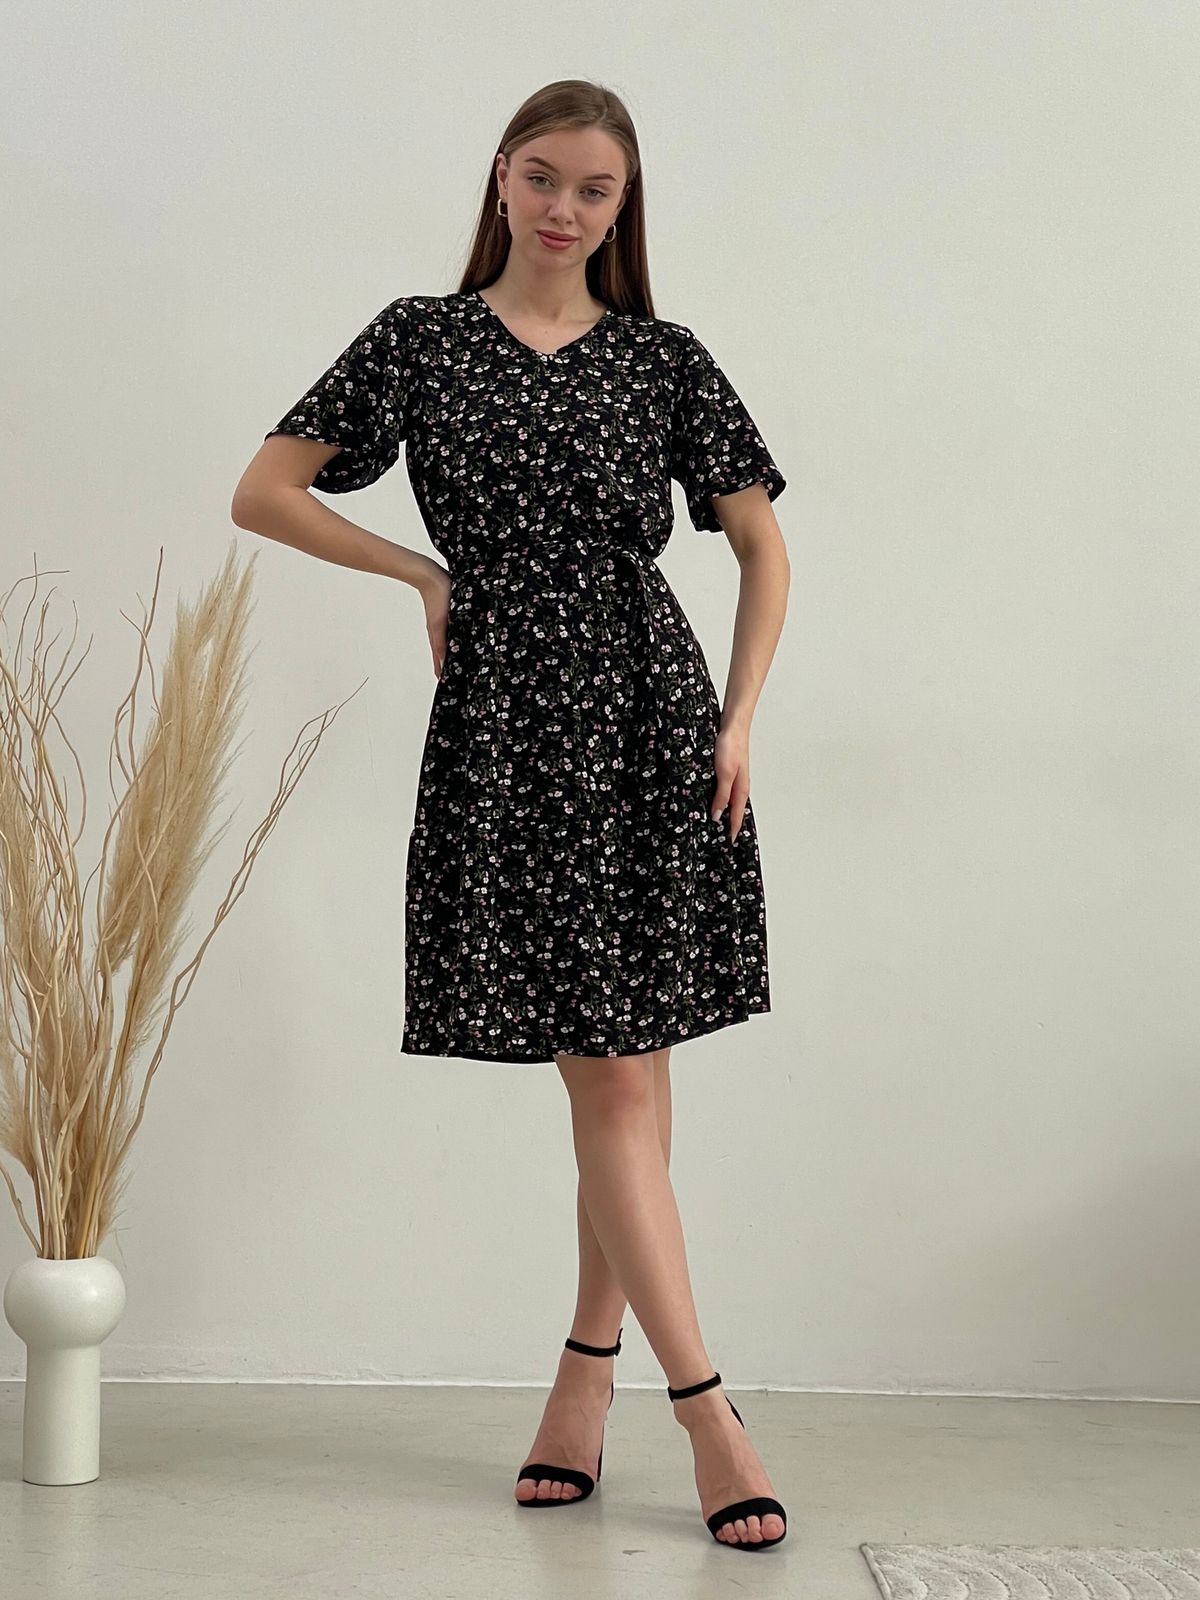 Купить Платье летнее ниже колен в цветочек черное Merlini Арко 700001321 размер 42-44 (S-M) в интернет-магазине